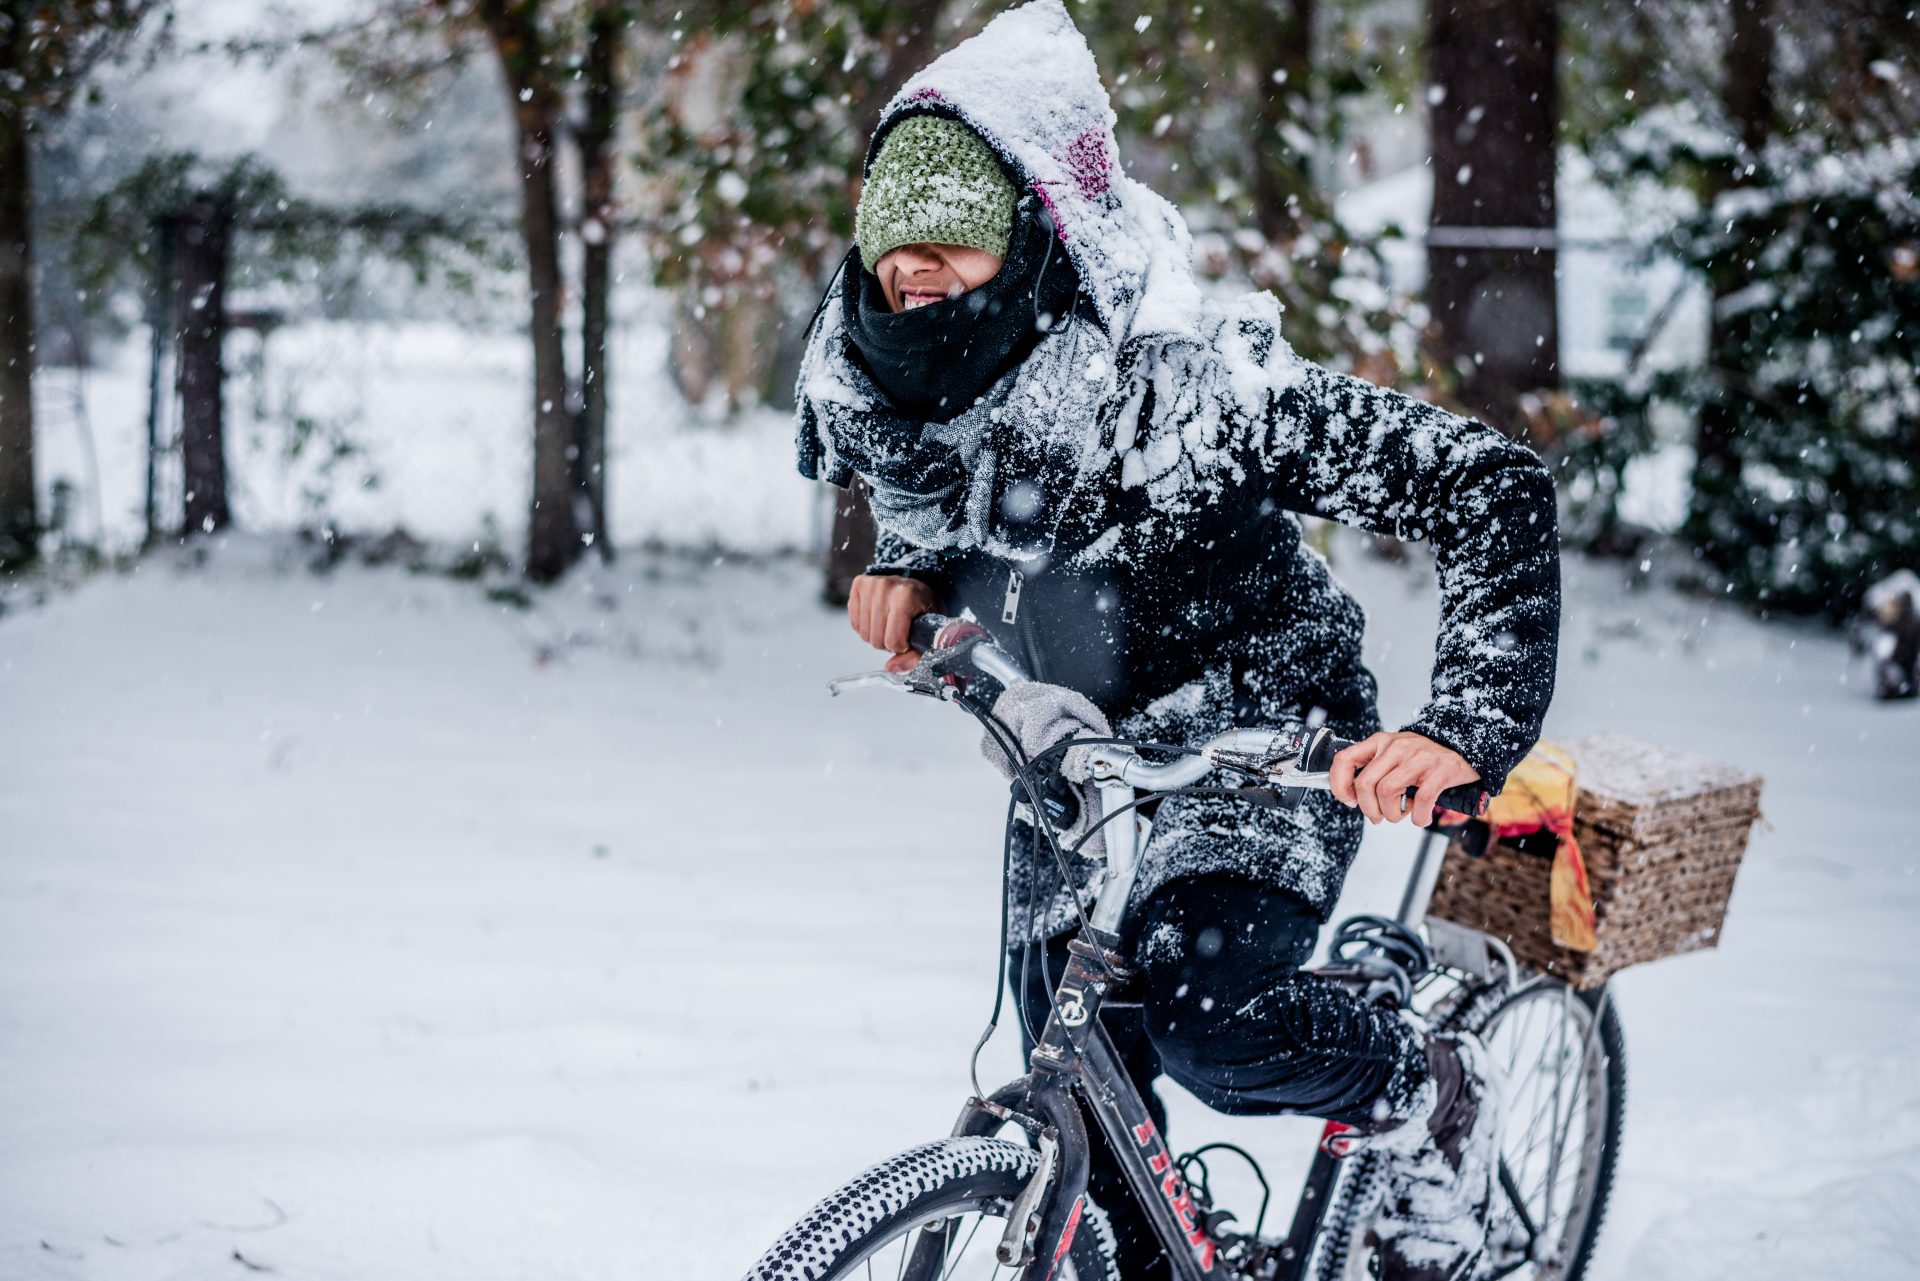 Fahrradfahren im Winter: 5 einfache Tipps, damit du sicher